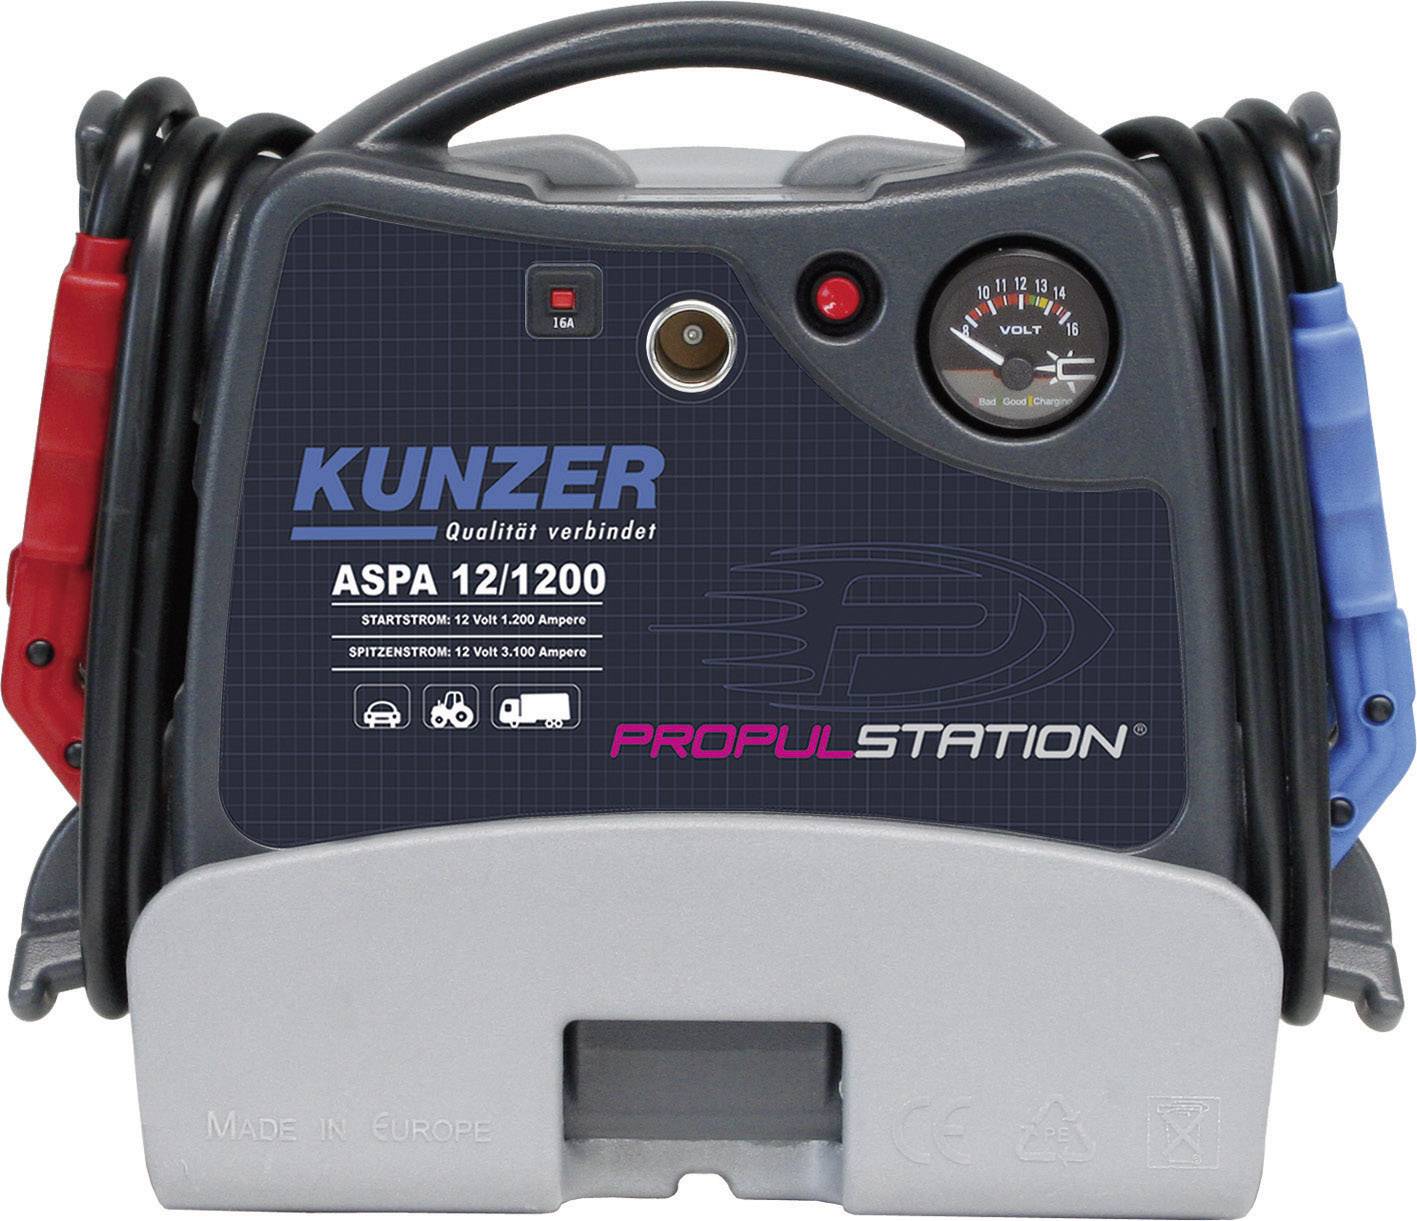 Système de démarrage rapide Kunzer ASPD 12/1200 Courant d'aide au démarrage  (12 V)=1200 A - Conrad Electronic France